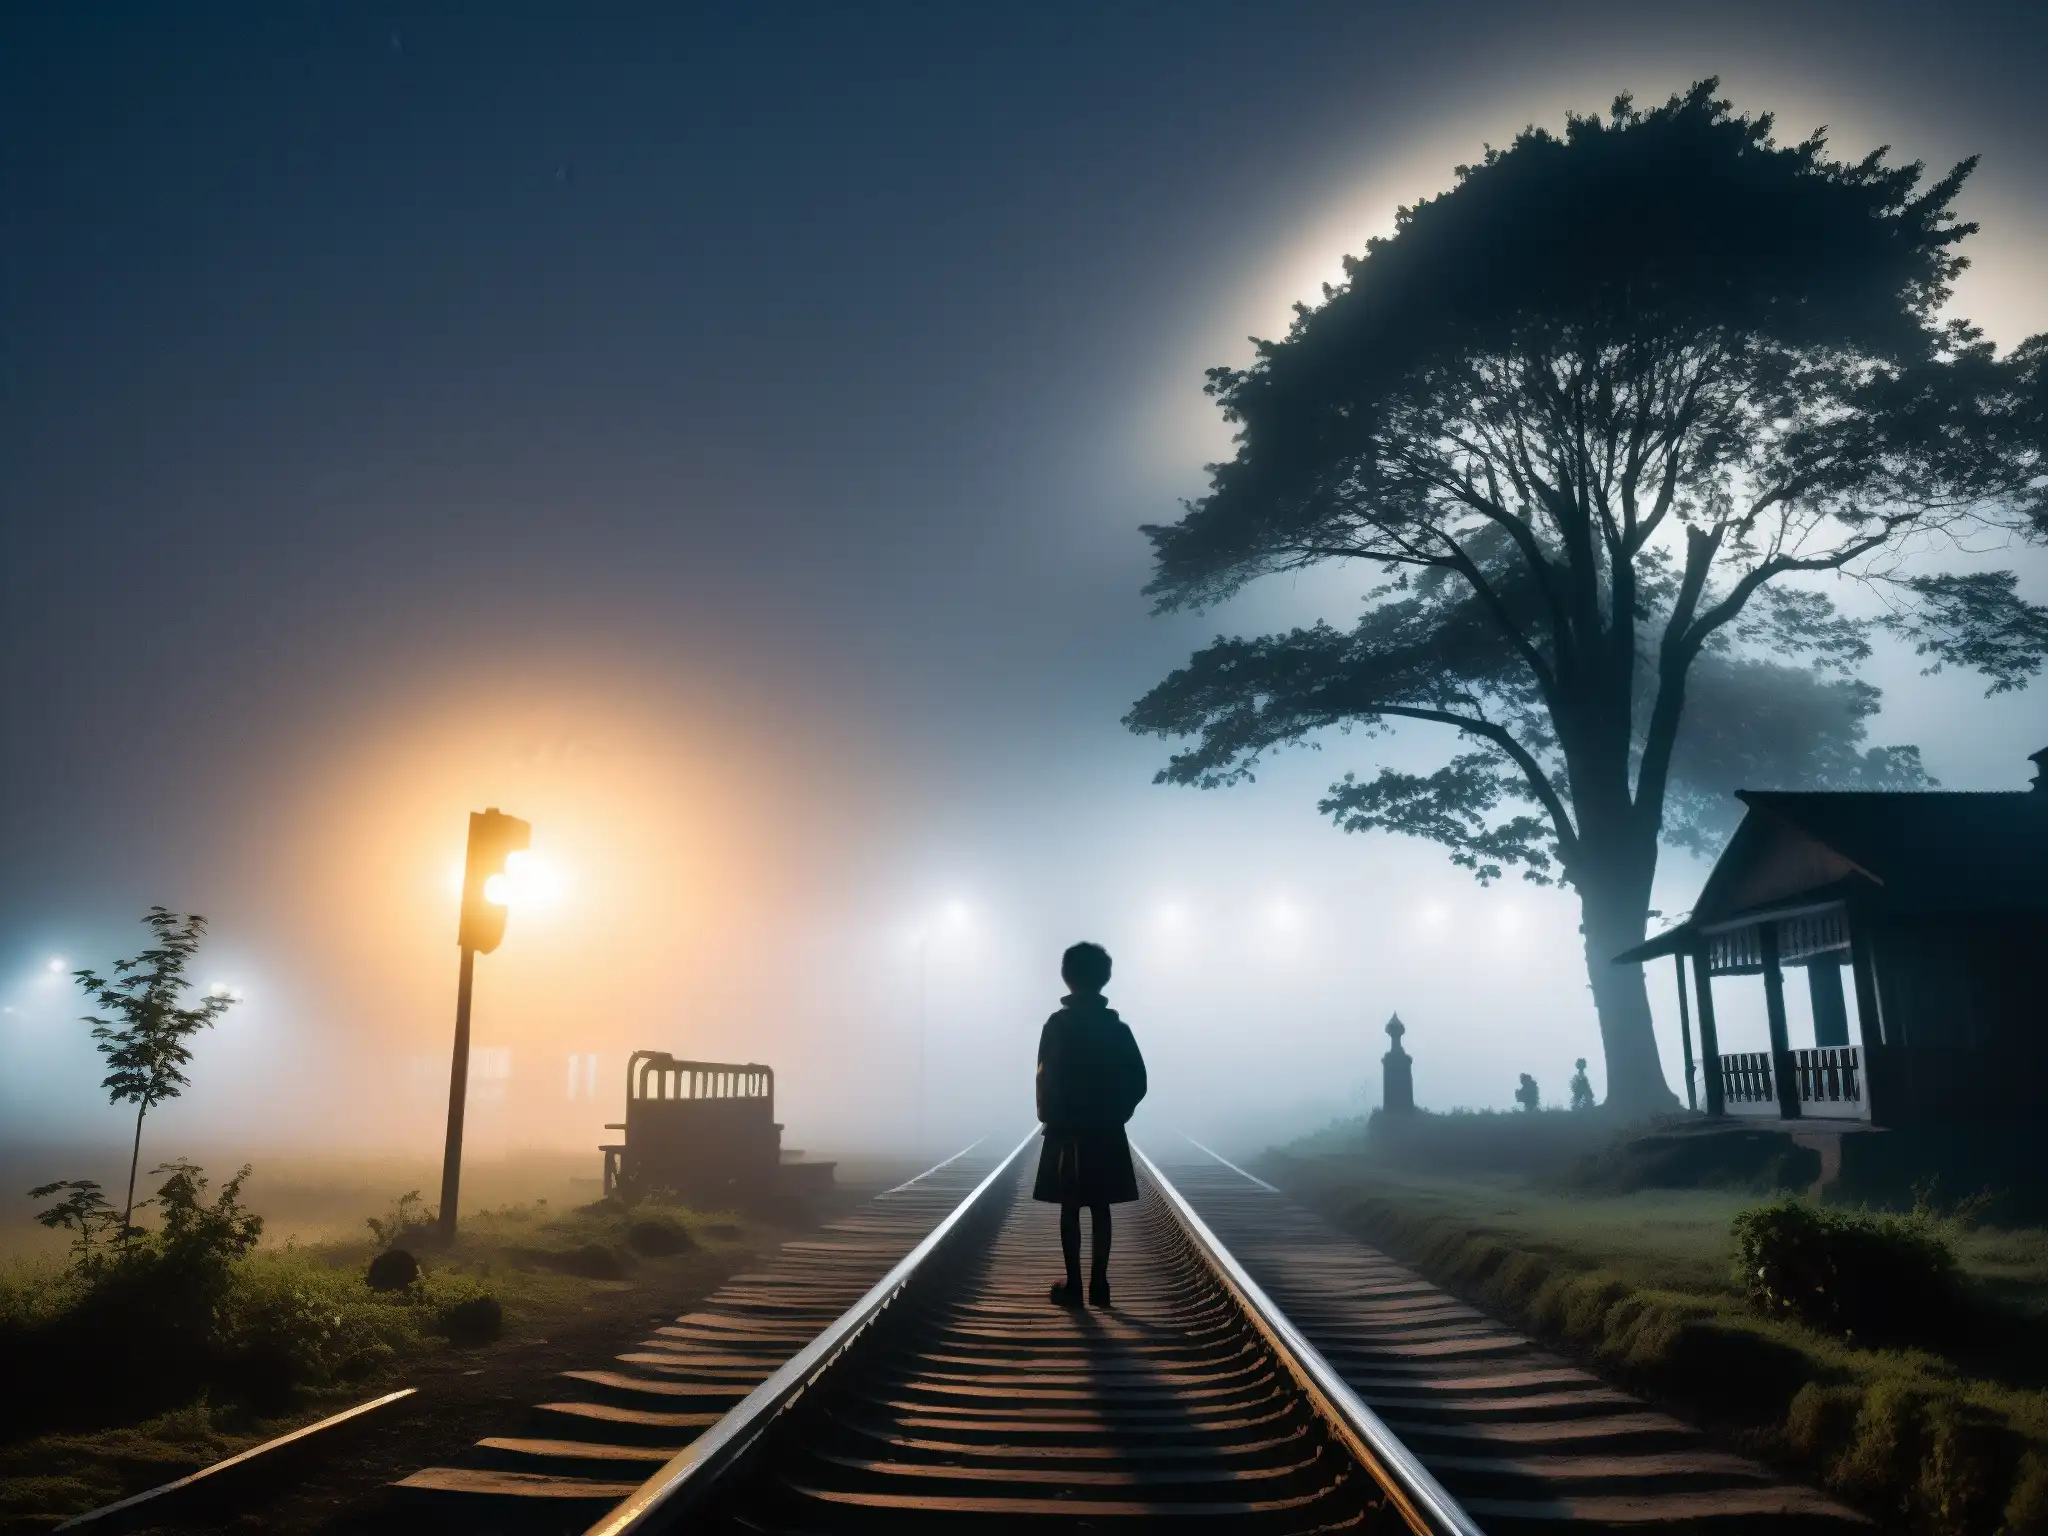 En la vieja estación de ferrocarril Begunkodor, una misteriosa noche de niebla y luna con la silueta de árboles y plataforma abandonada